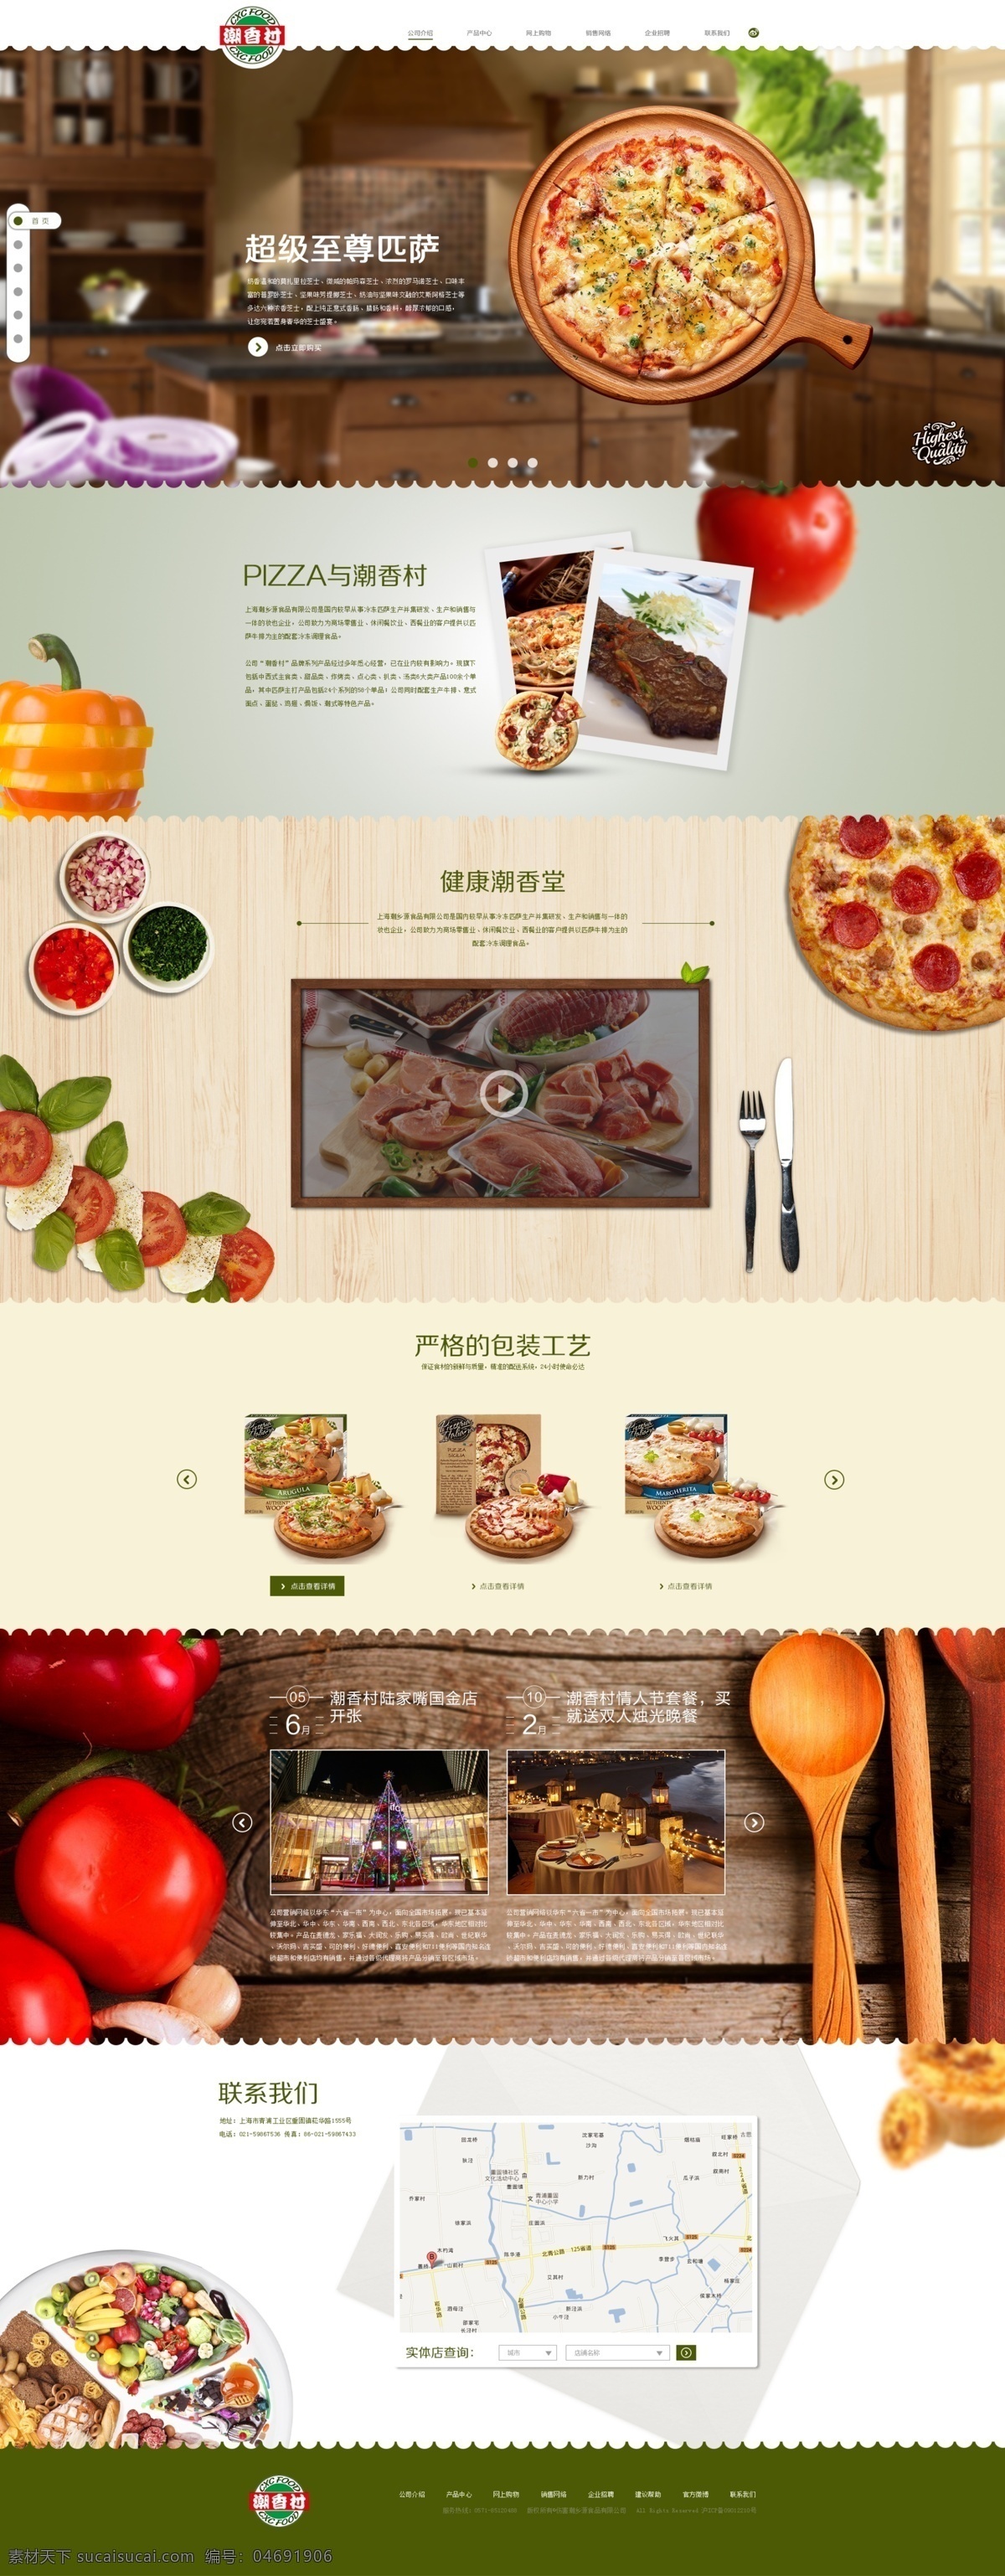 潮 香 村 网页模板 首页 界面设计 美食网站 一页式 披萨店 白色